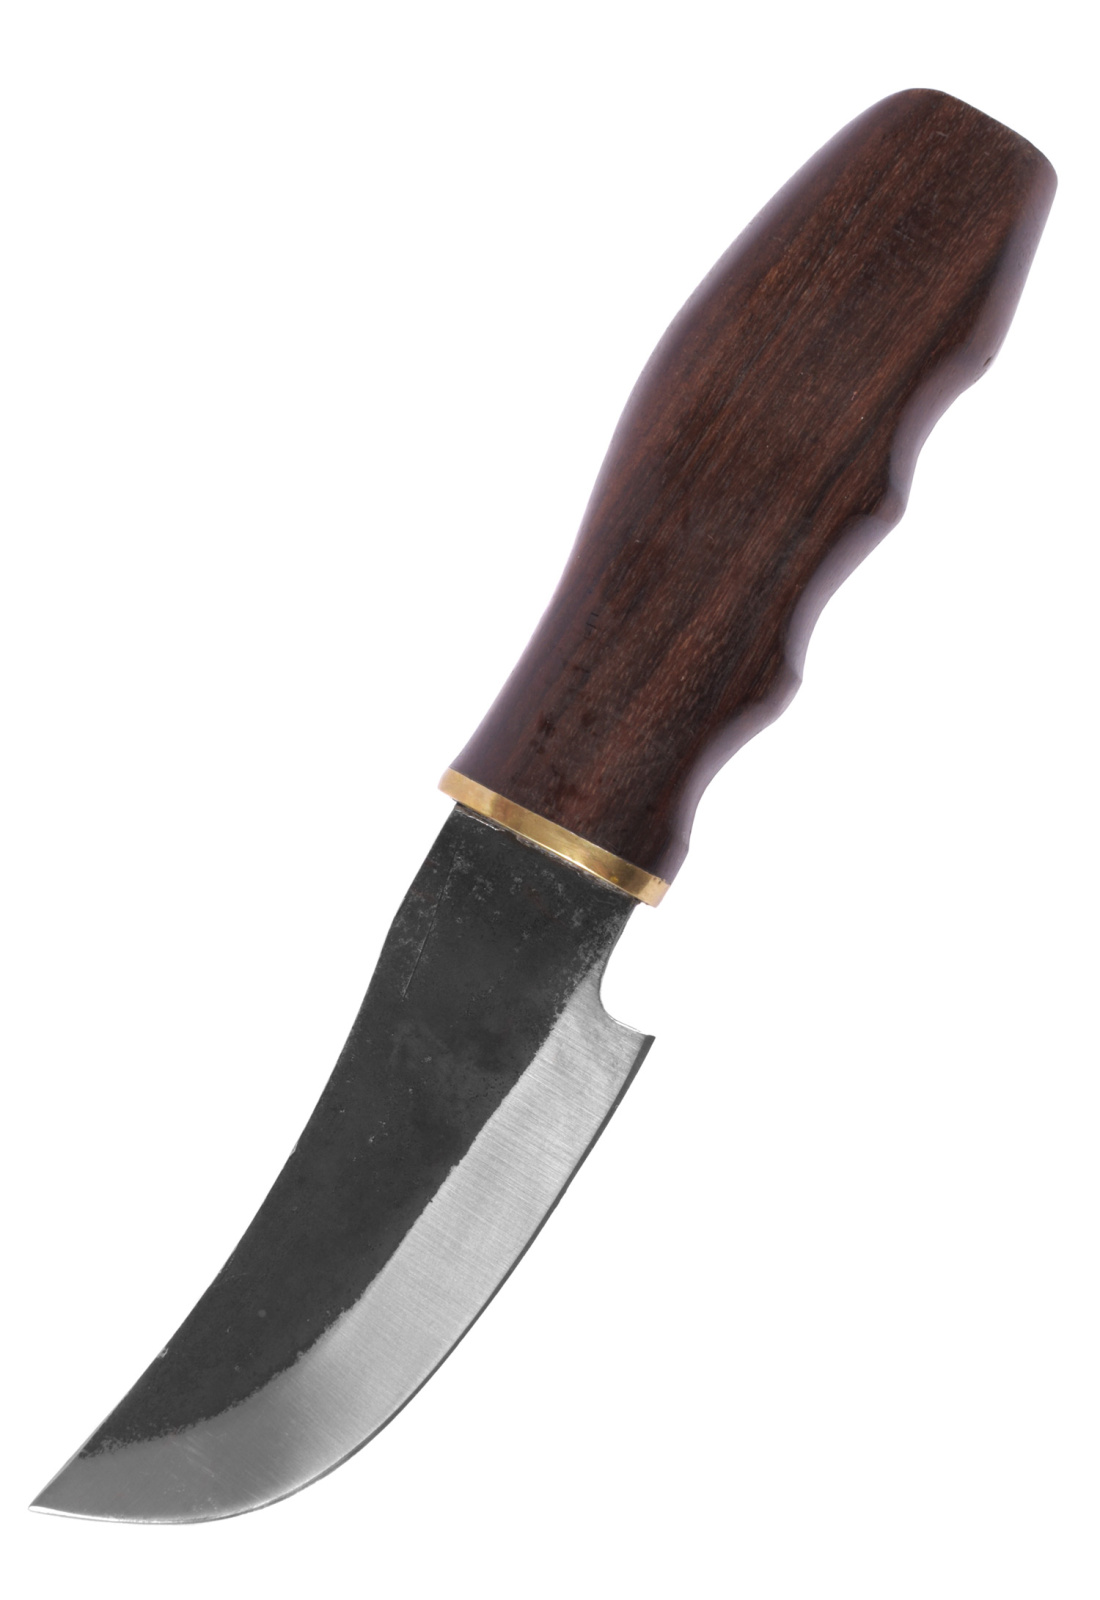 Как сделать из дерева охотничий нож: как сделать из кожи, дерева, скрутку, чехол для начинающих